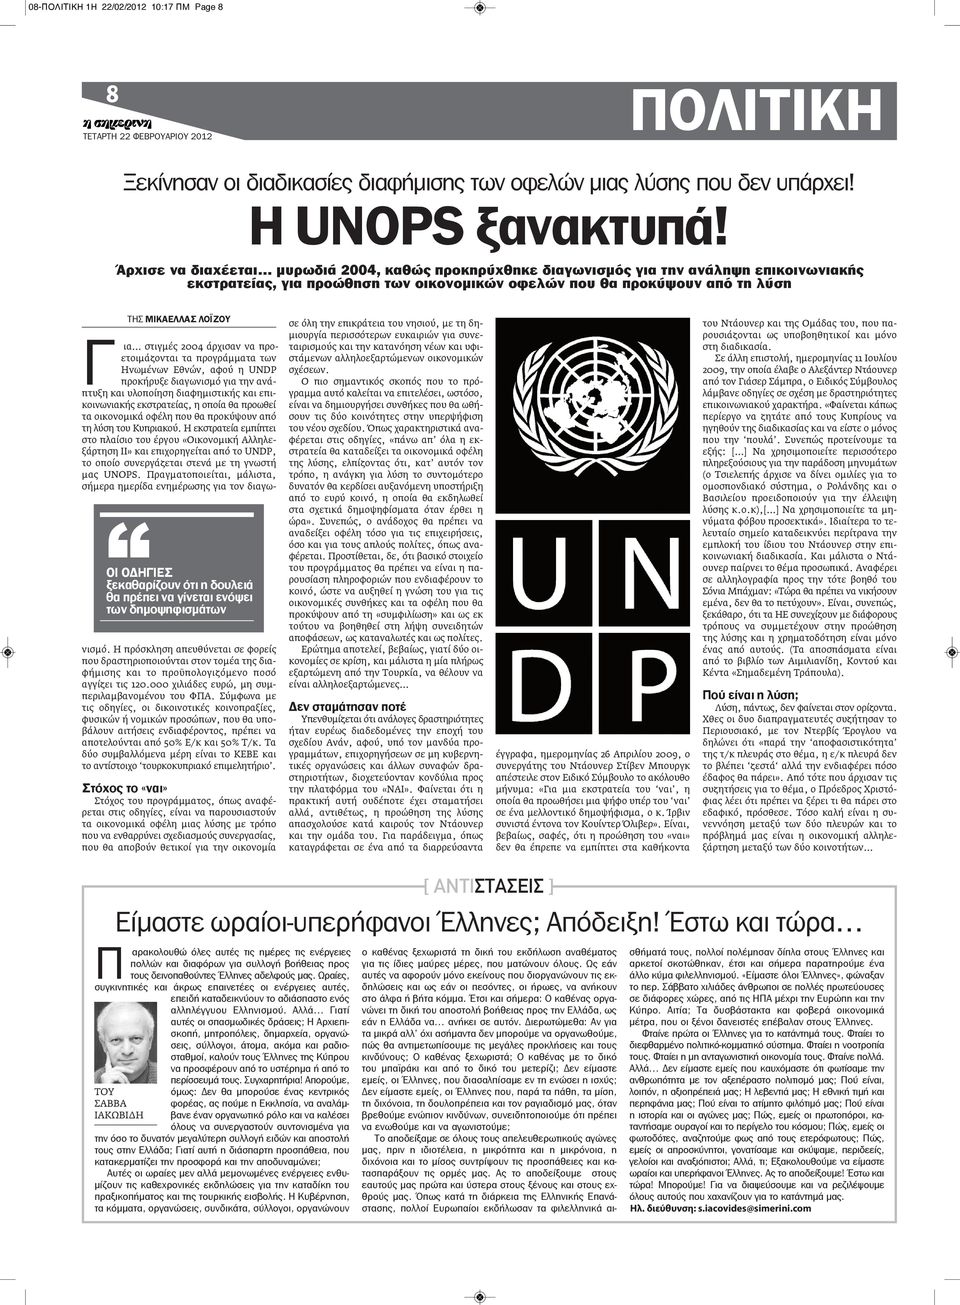 ότι η δουλειά θα πρέπει να γίνεται ενόψει των δημοψηφισμάτων ΤΗΣ ΜΙΚΑΕΛΛΑΣ ΛΟΪΖΟΥ Γ ια στιγμές 2004 άρχισαν να προετοιμάζονται τα προγράμματα των Ηνωμένων Εθνών, αφού η UNDP προκήρυξε διαγωνισμό για